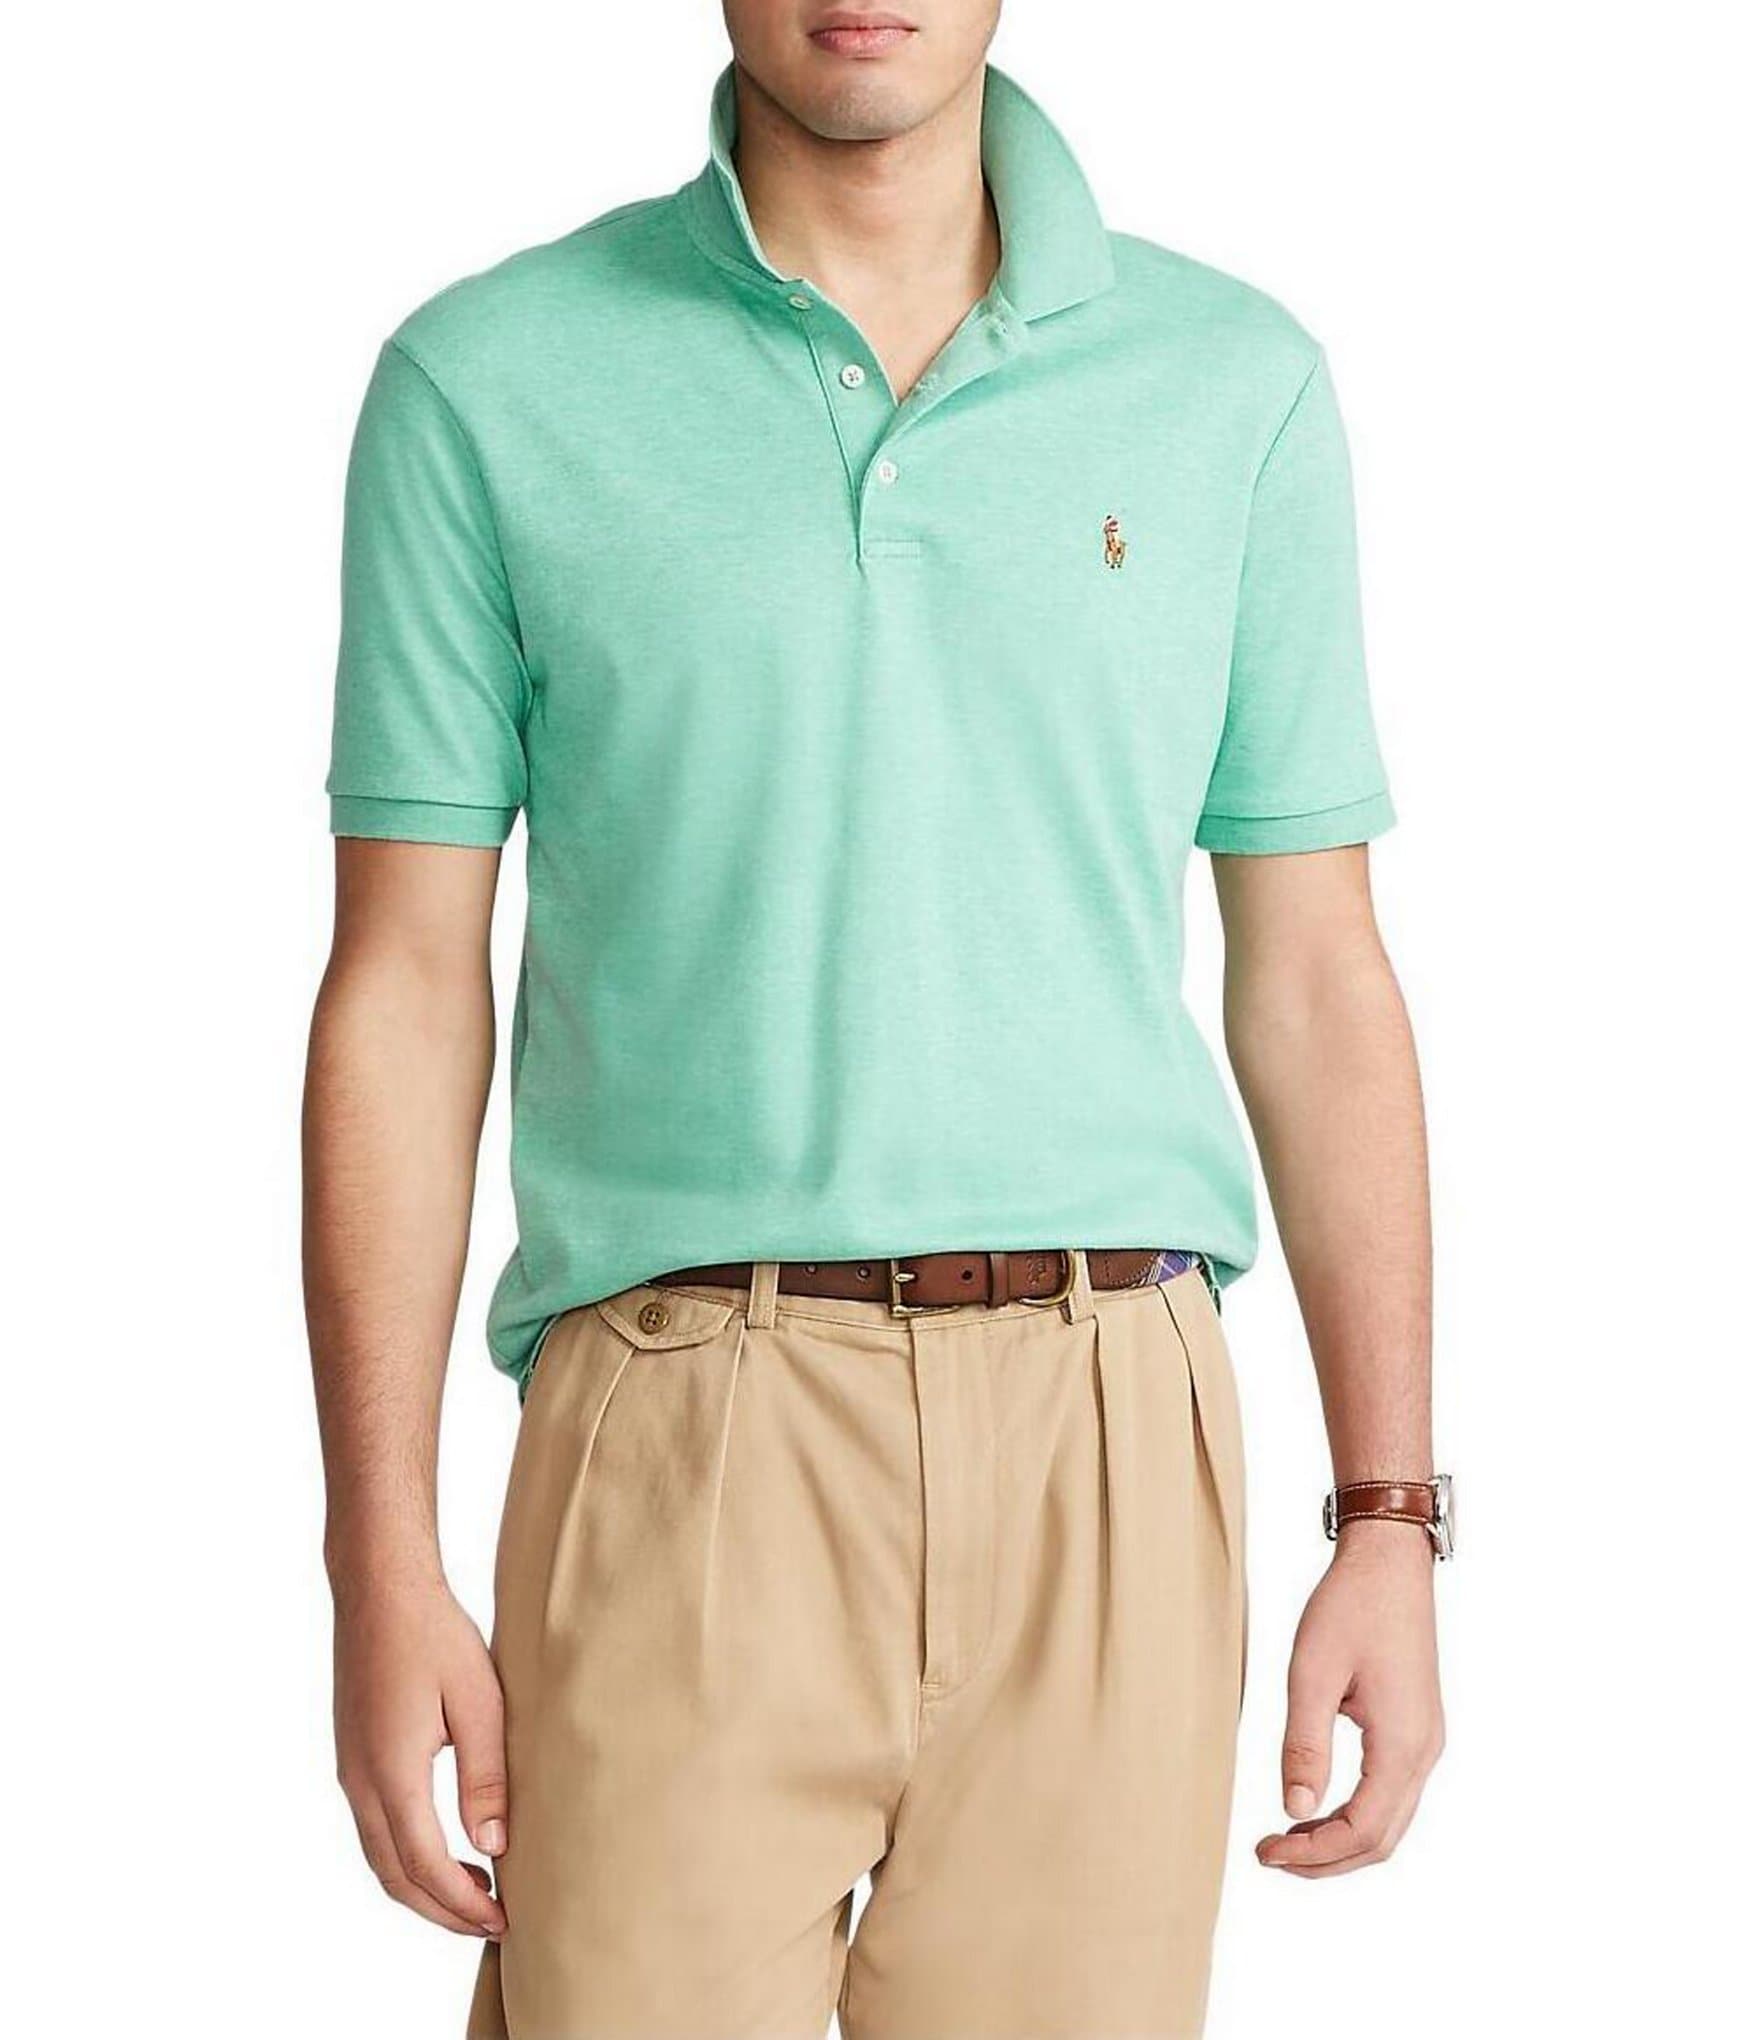 Polo Ralph Lauren Big & Tall Soft Cotton Long Sleeve T-Shirt